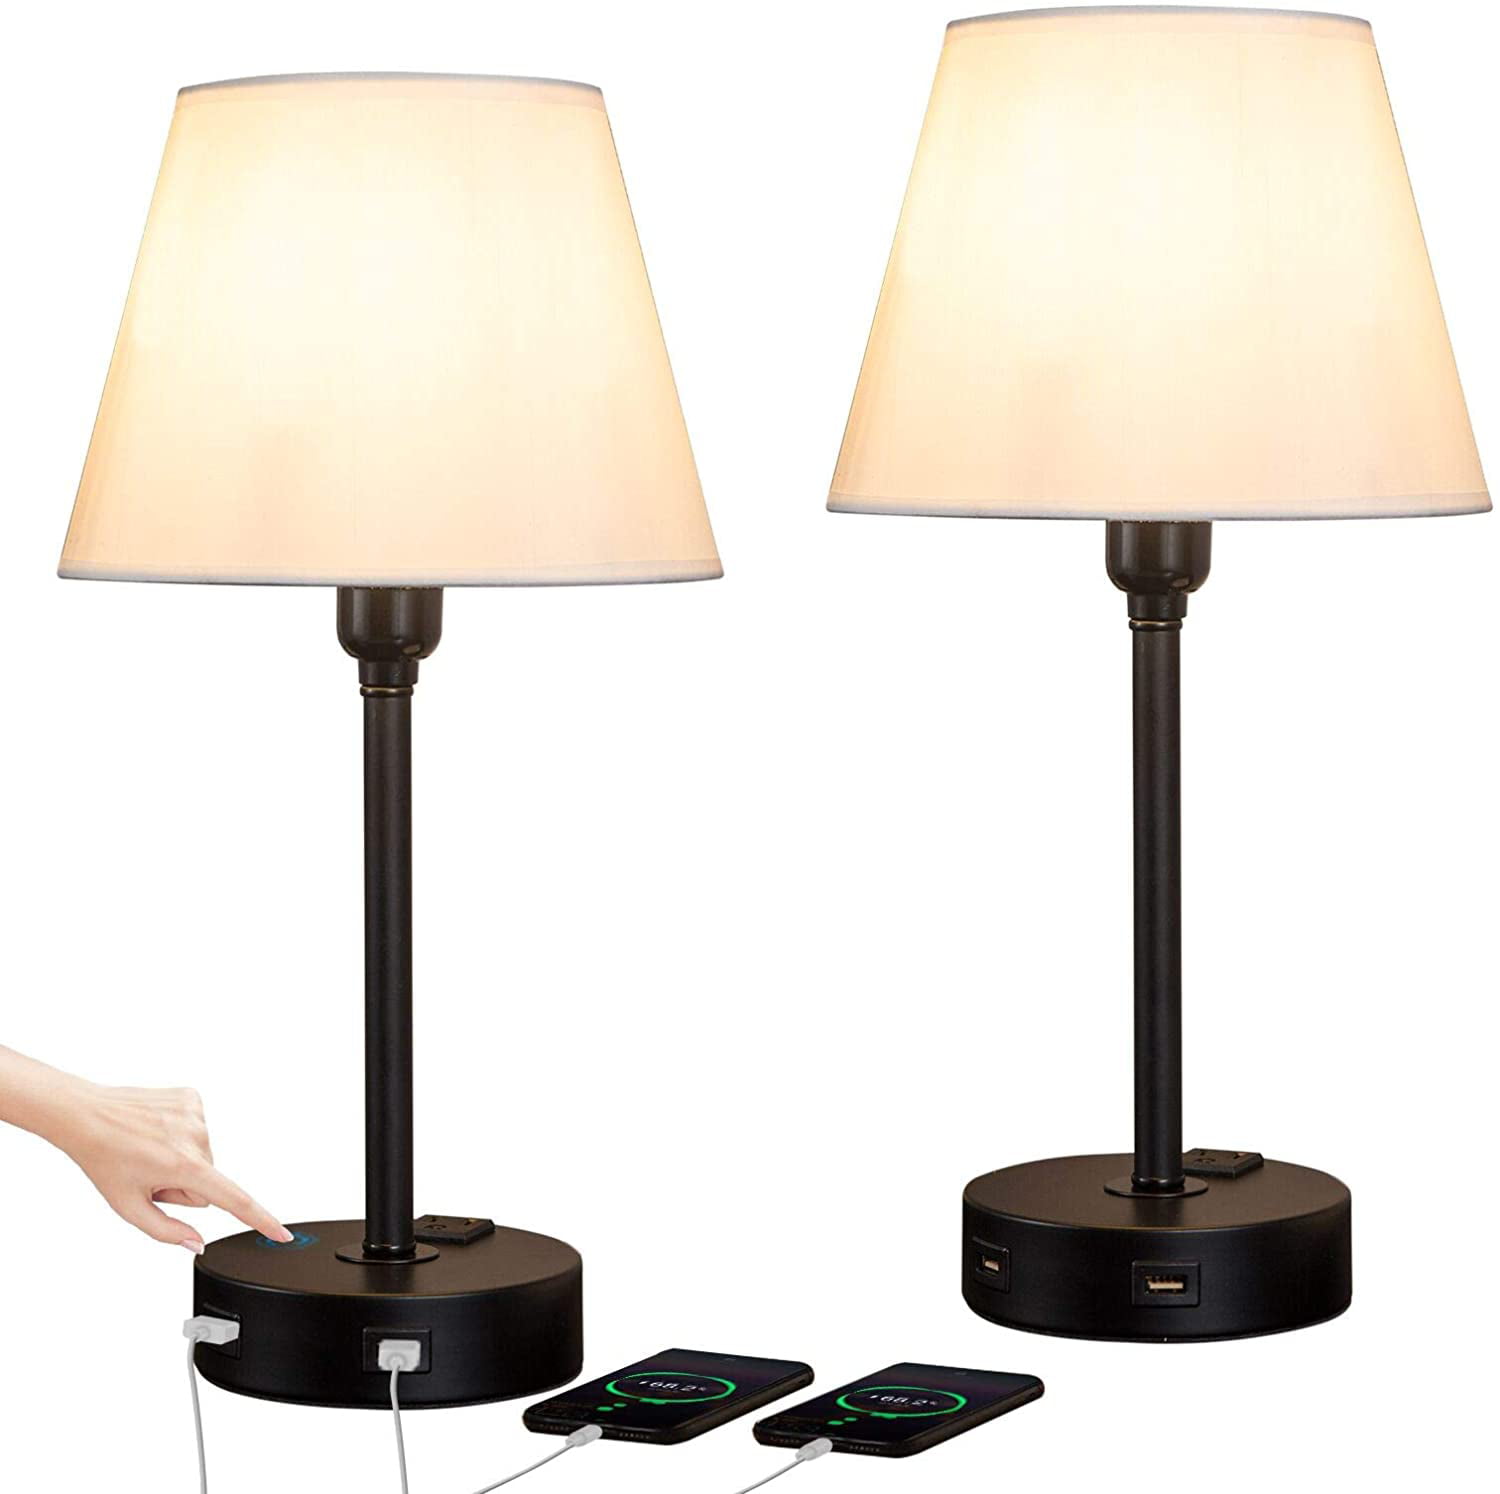 Zeefo Touch Control Table Lamp Built In, Edison Fan Table Lamp